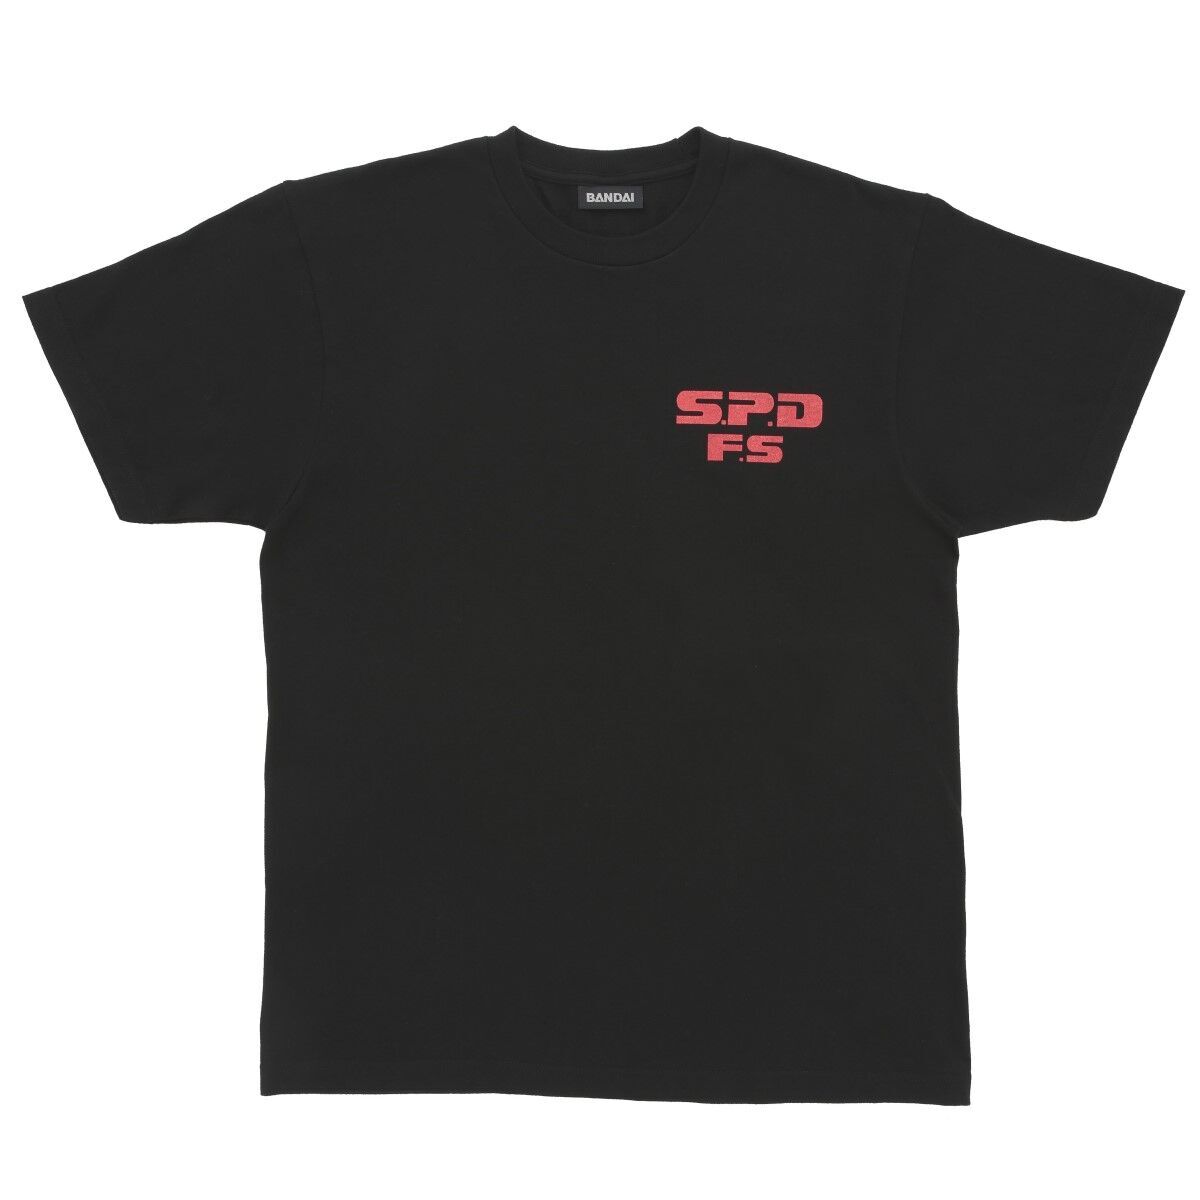 Dekaranger S.P.D. Fire Squad T-Shirt